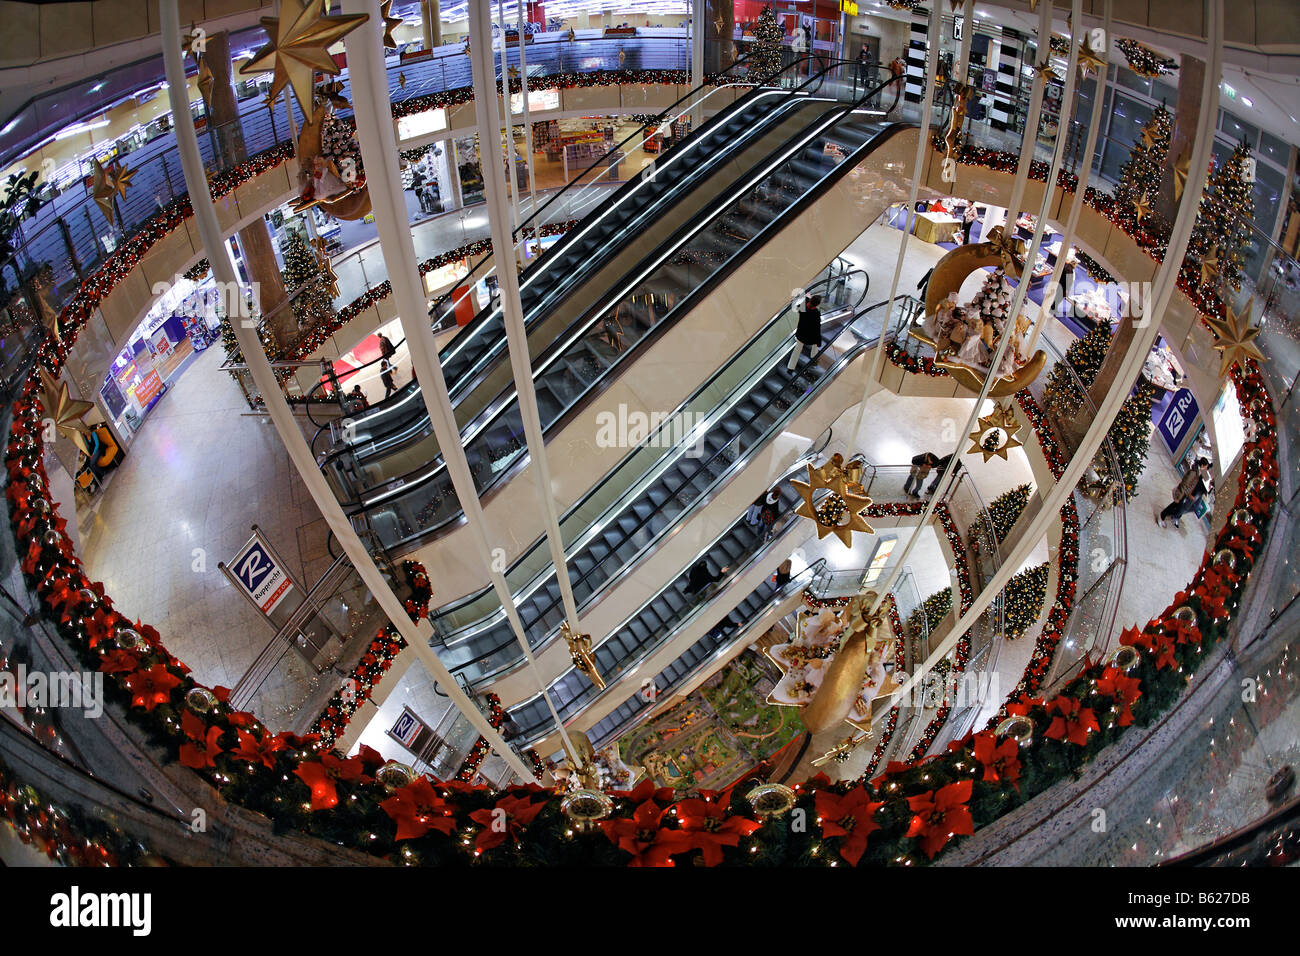 Point Ville department store, décorée pour Noël, centre commercial, escalator, Nuremberg, Middle Franconia, Bavaria, Germany Banque D'Images